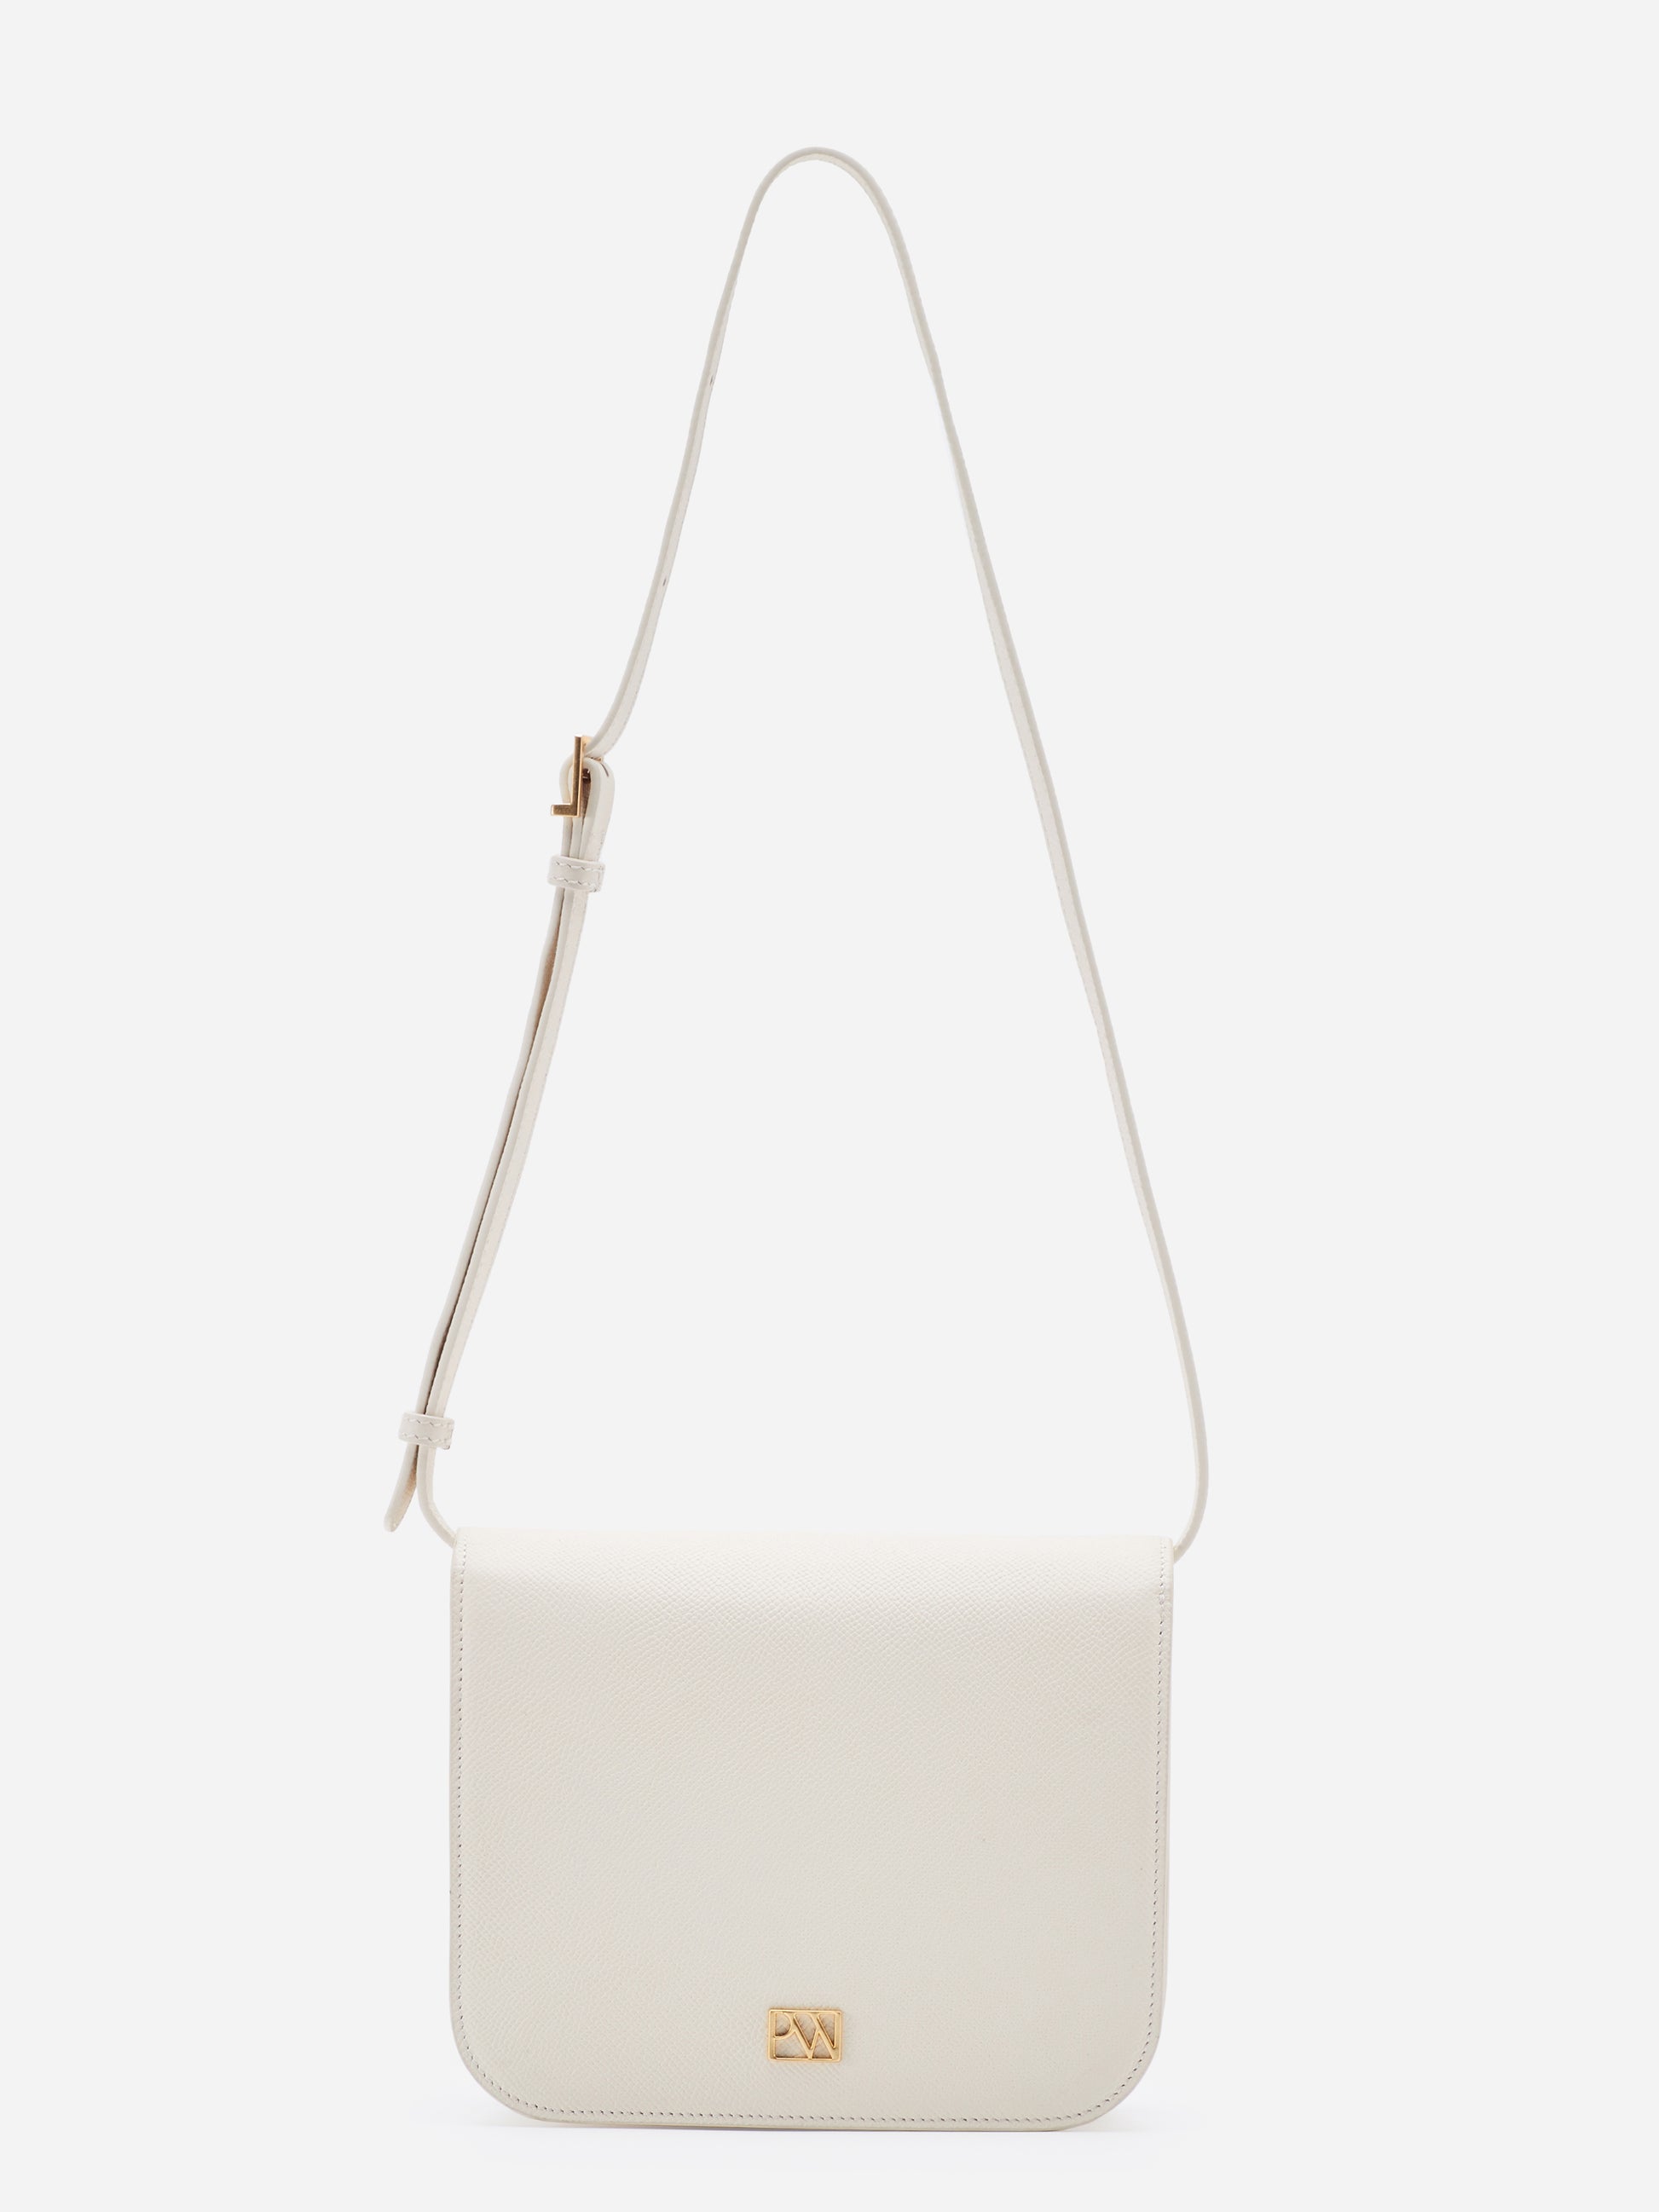 Unlocked Box Flap Bag in Cream | Parisa Wang 